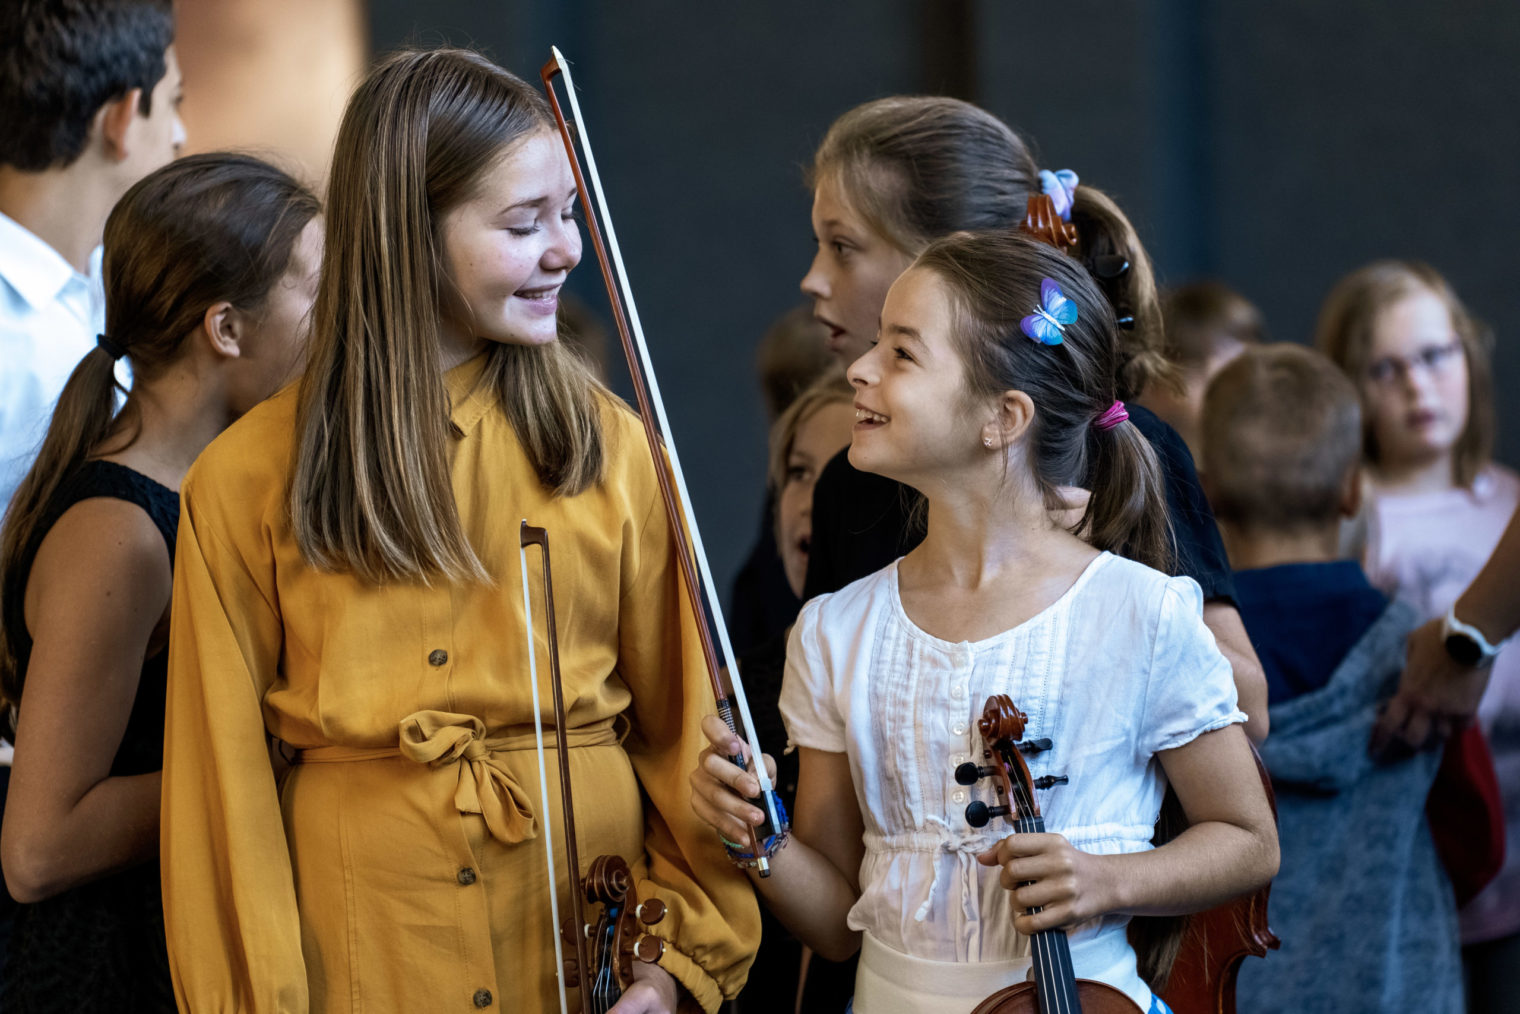 Zwei Mädchen des Jugendstreichorchesters lachen einander an, ein Mädchen hält dabei Geige und Bogen in den Händen